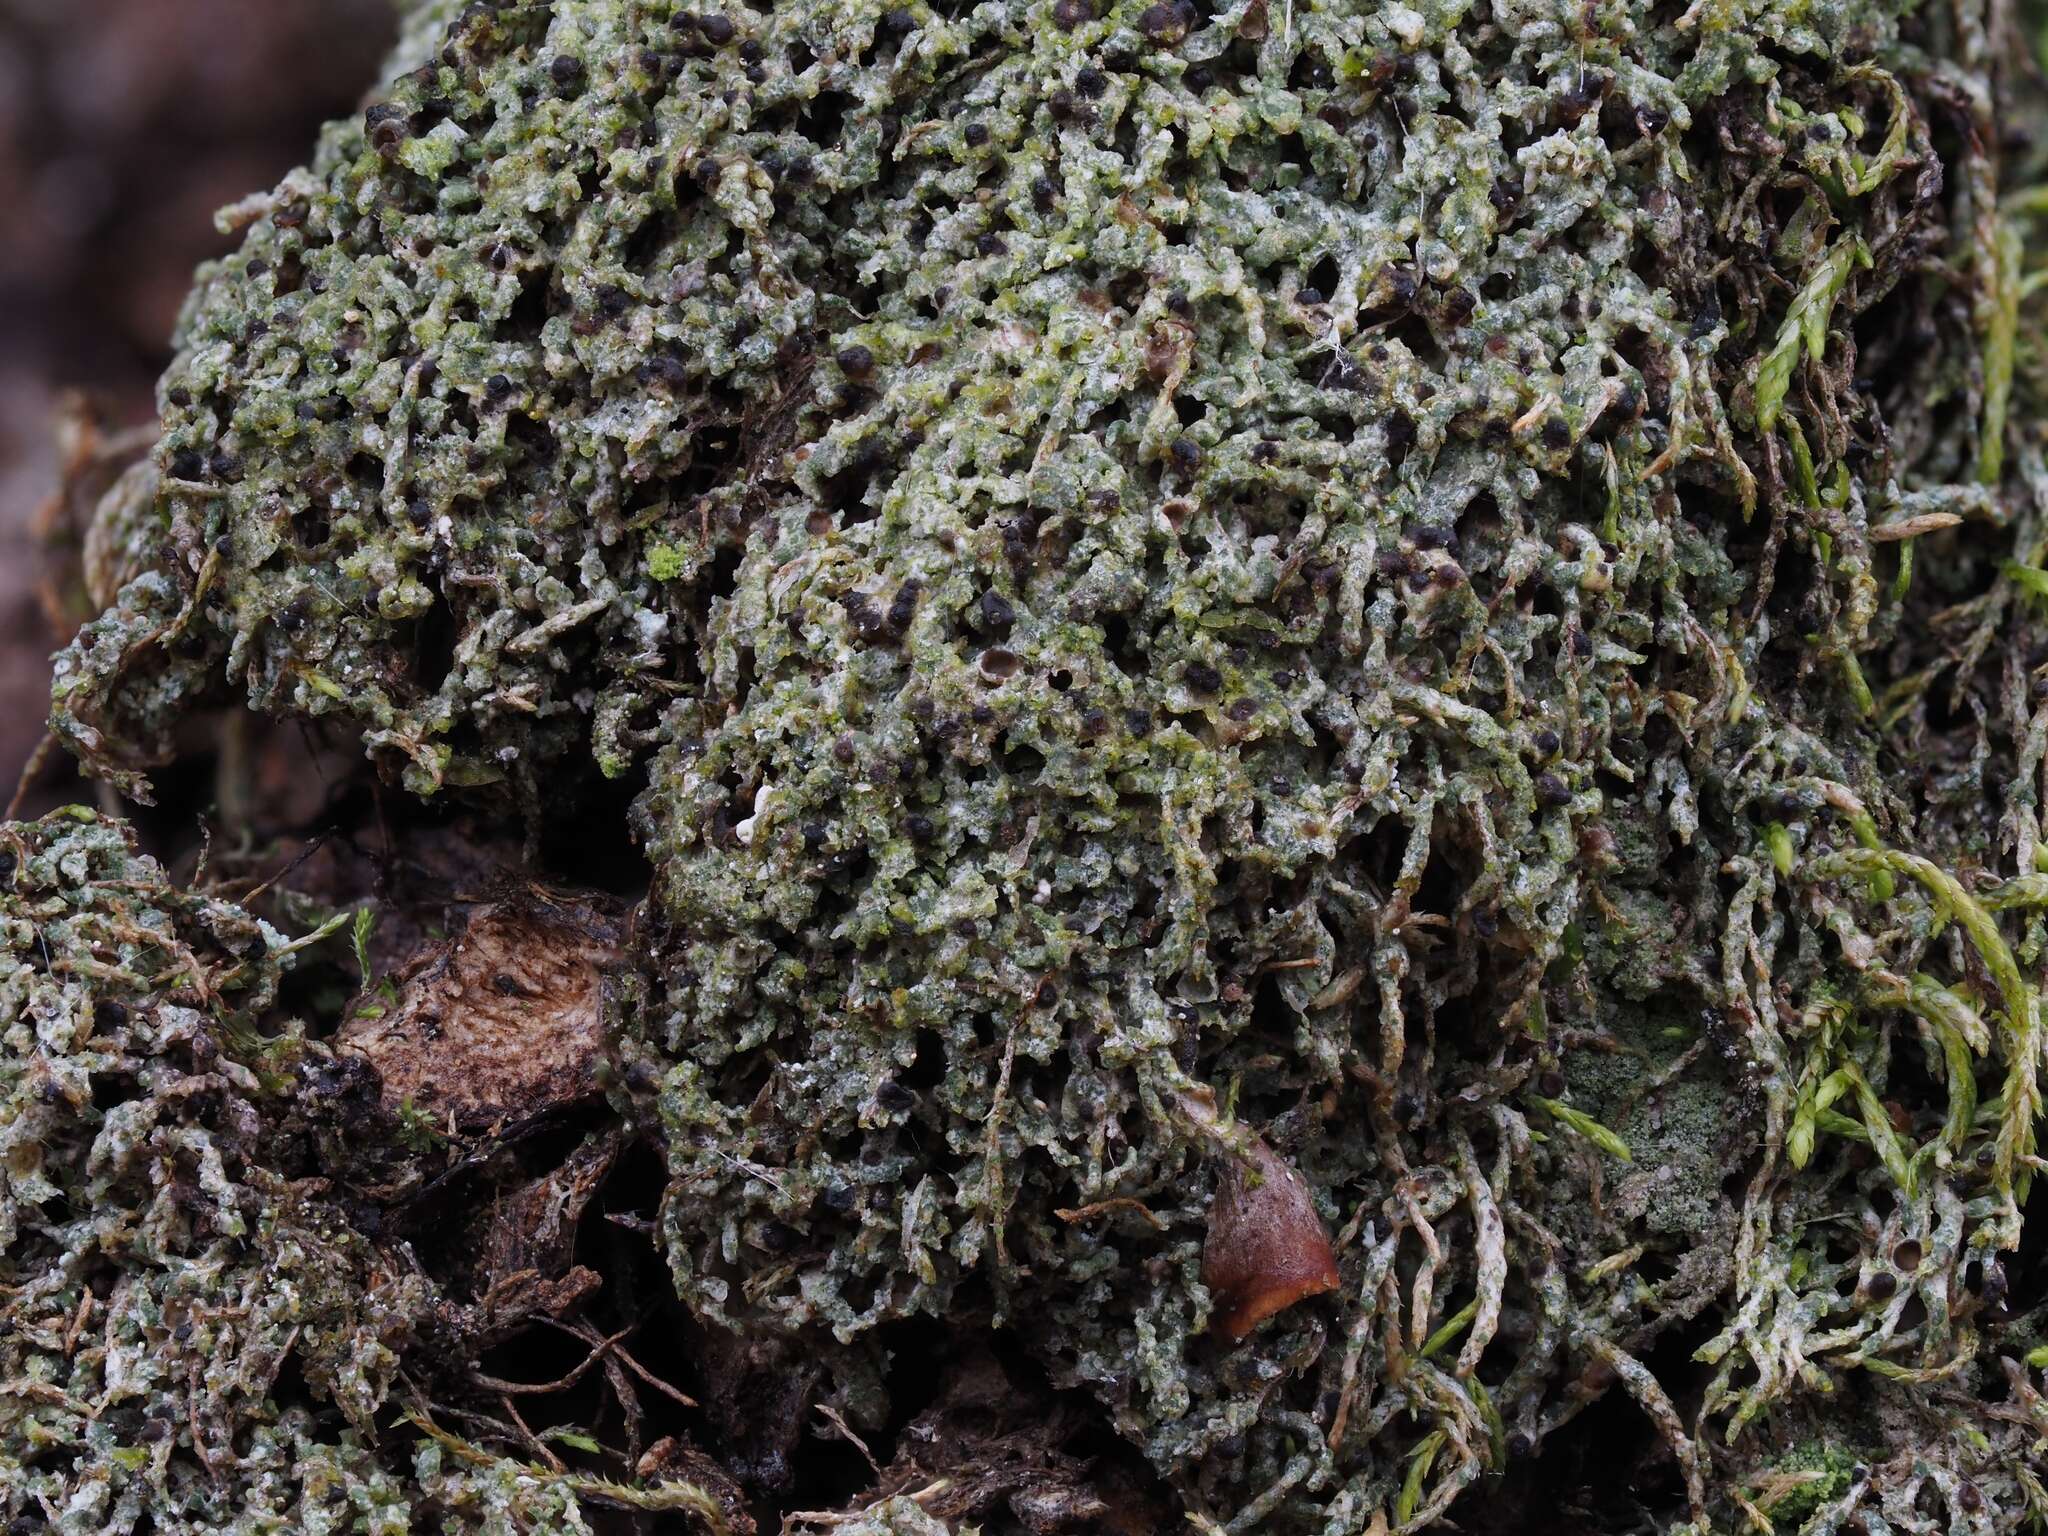 Image of thelenella lichen